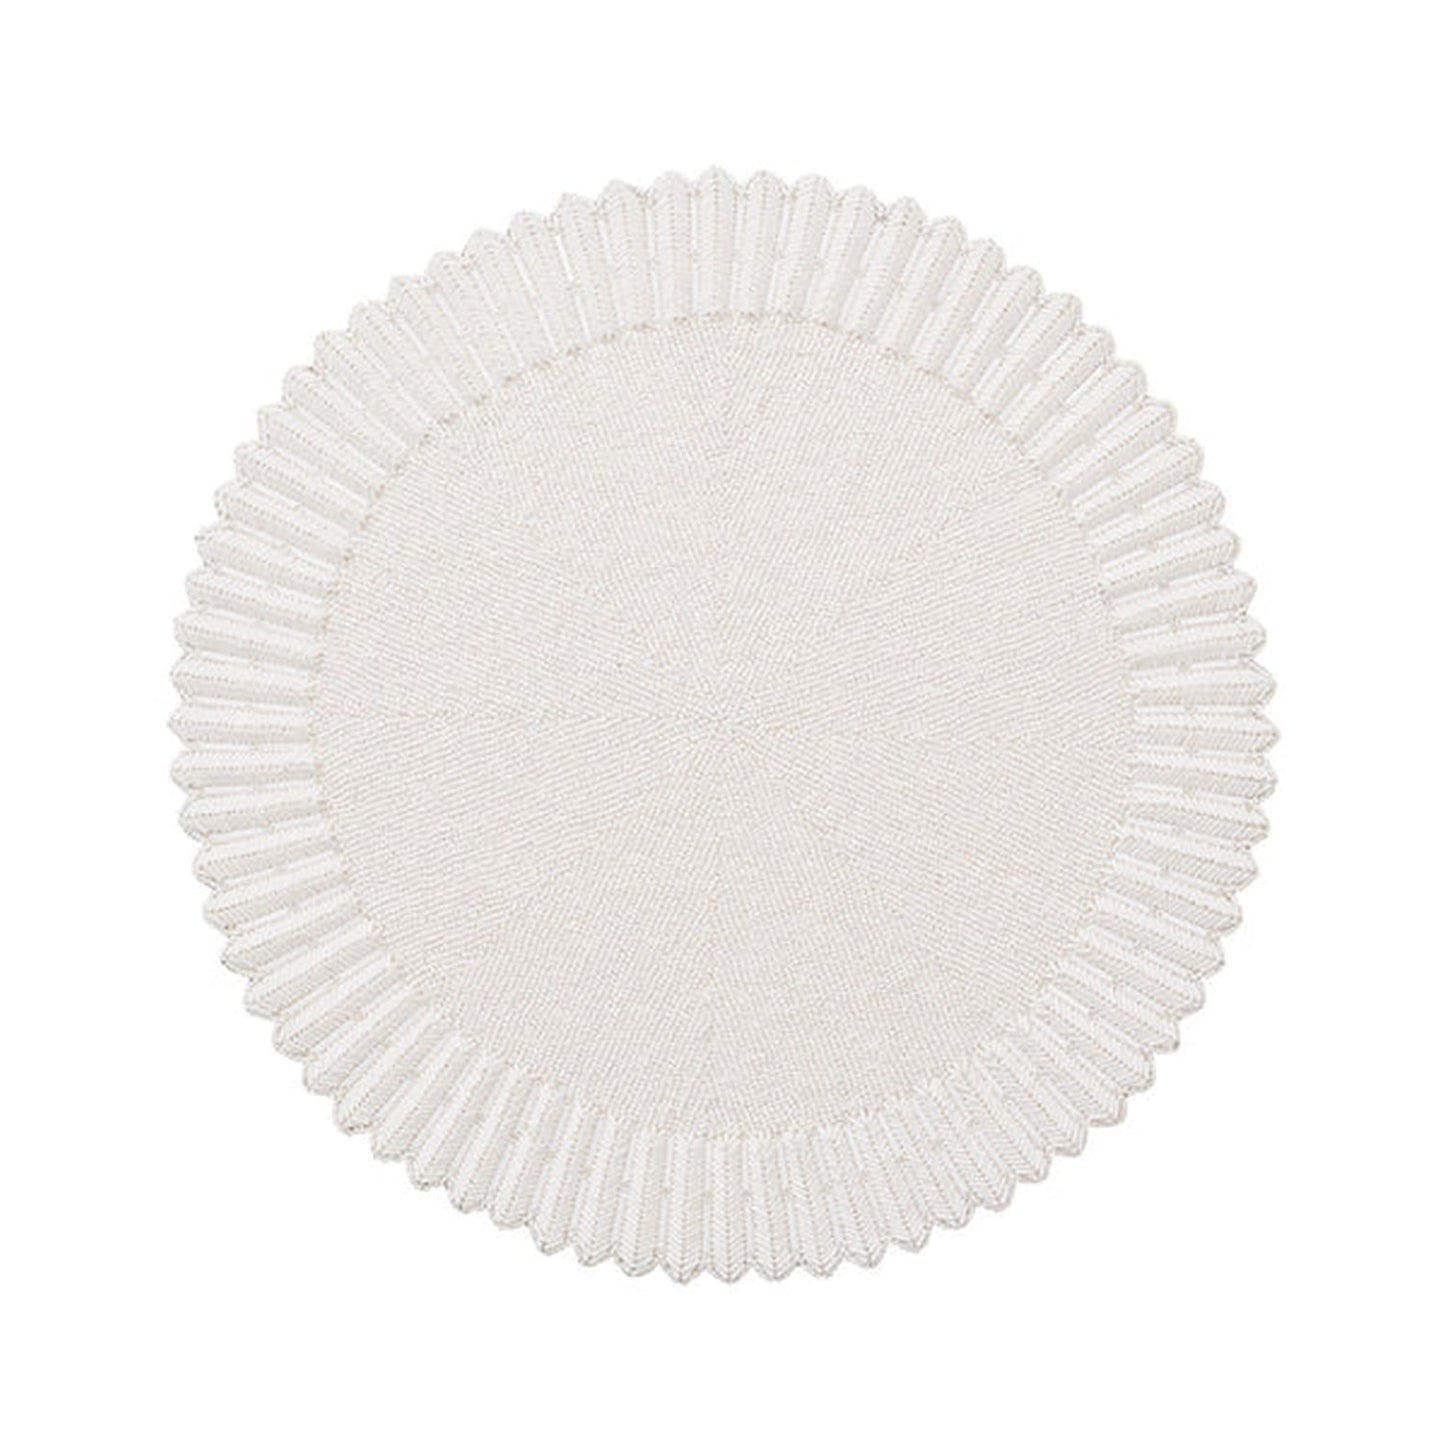 Kim Seybert Lumina Placemat in White, Set of 2